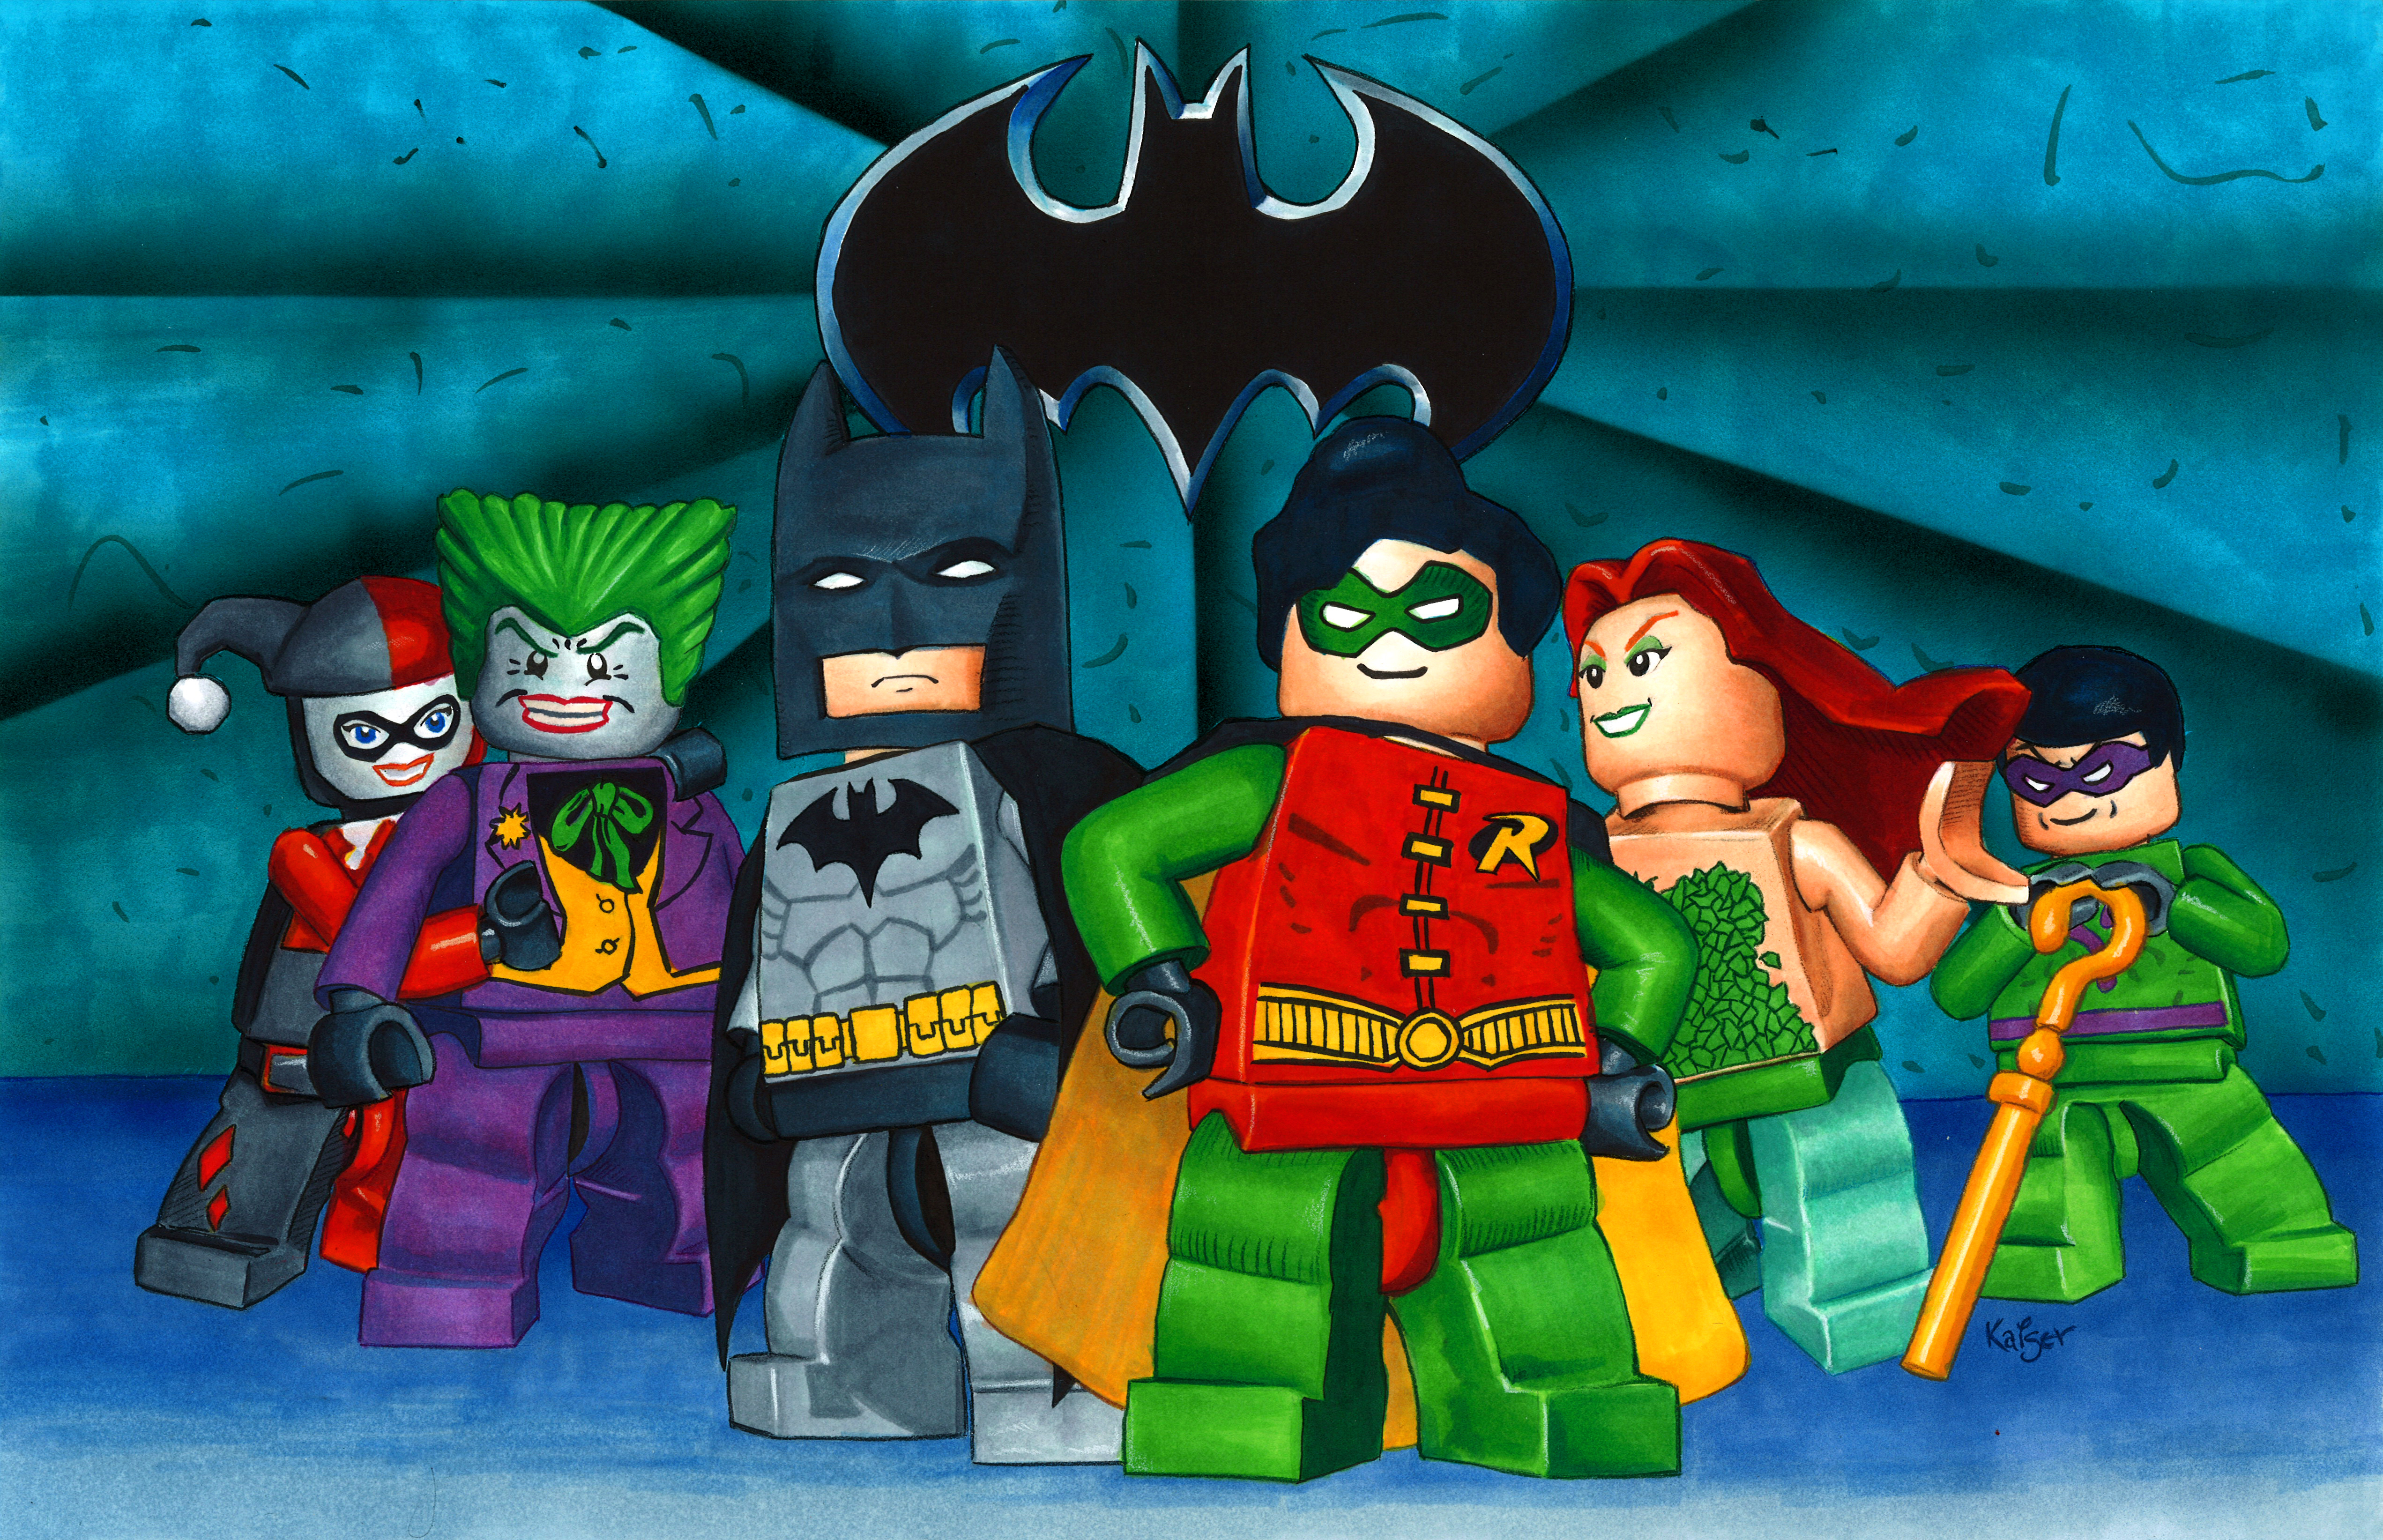 LEGO Batman: The Videogame 4k Ultra HD Wallpaper by RachelKaiser